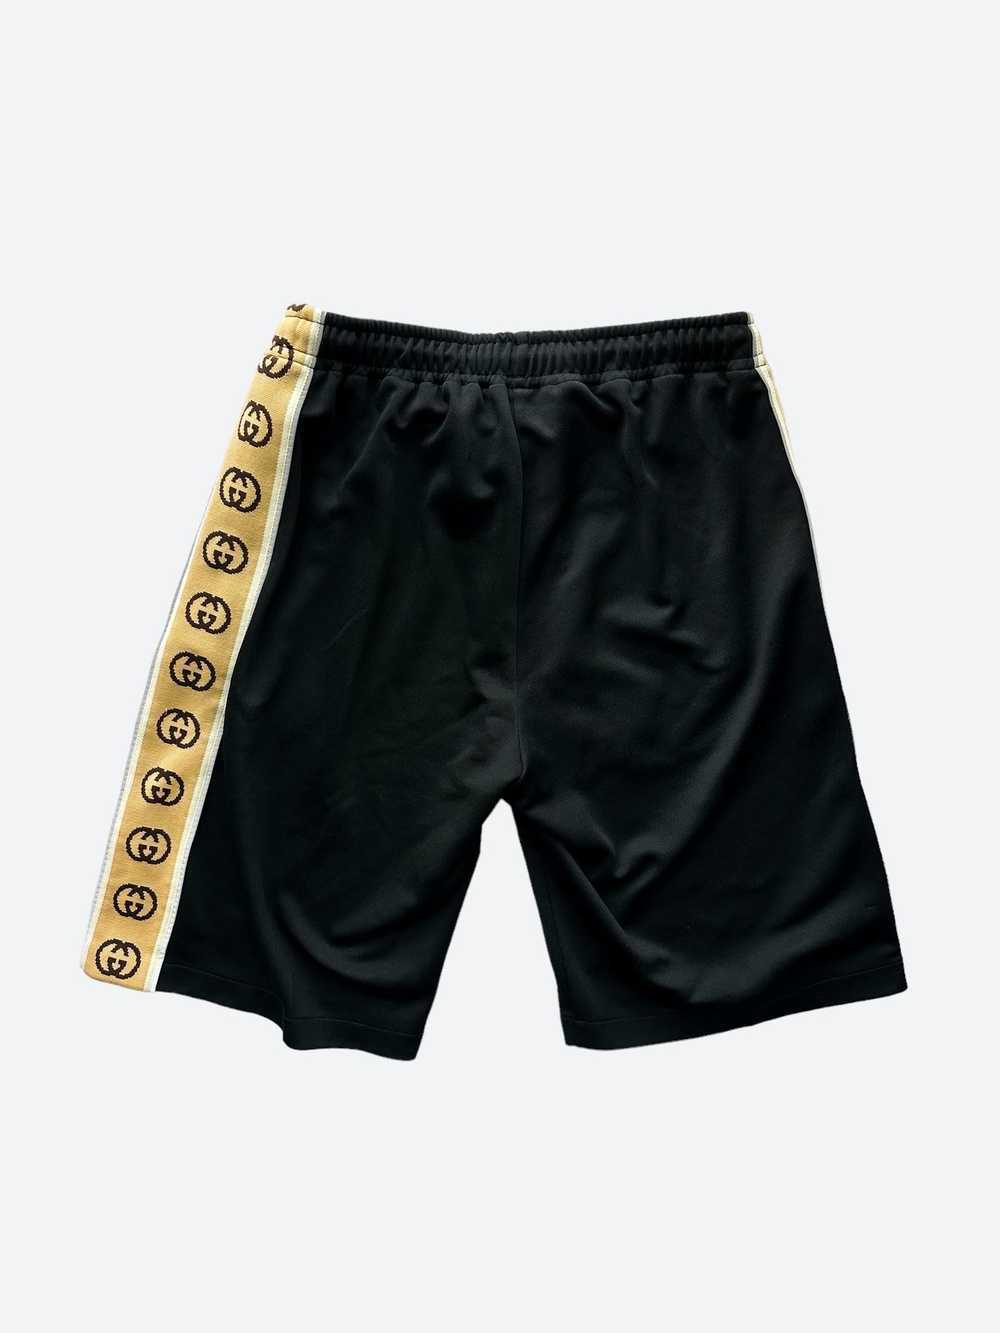 Gucci Gucci Black GG Monogram Striped Shorts - image 2